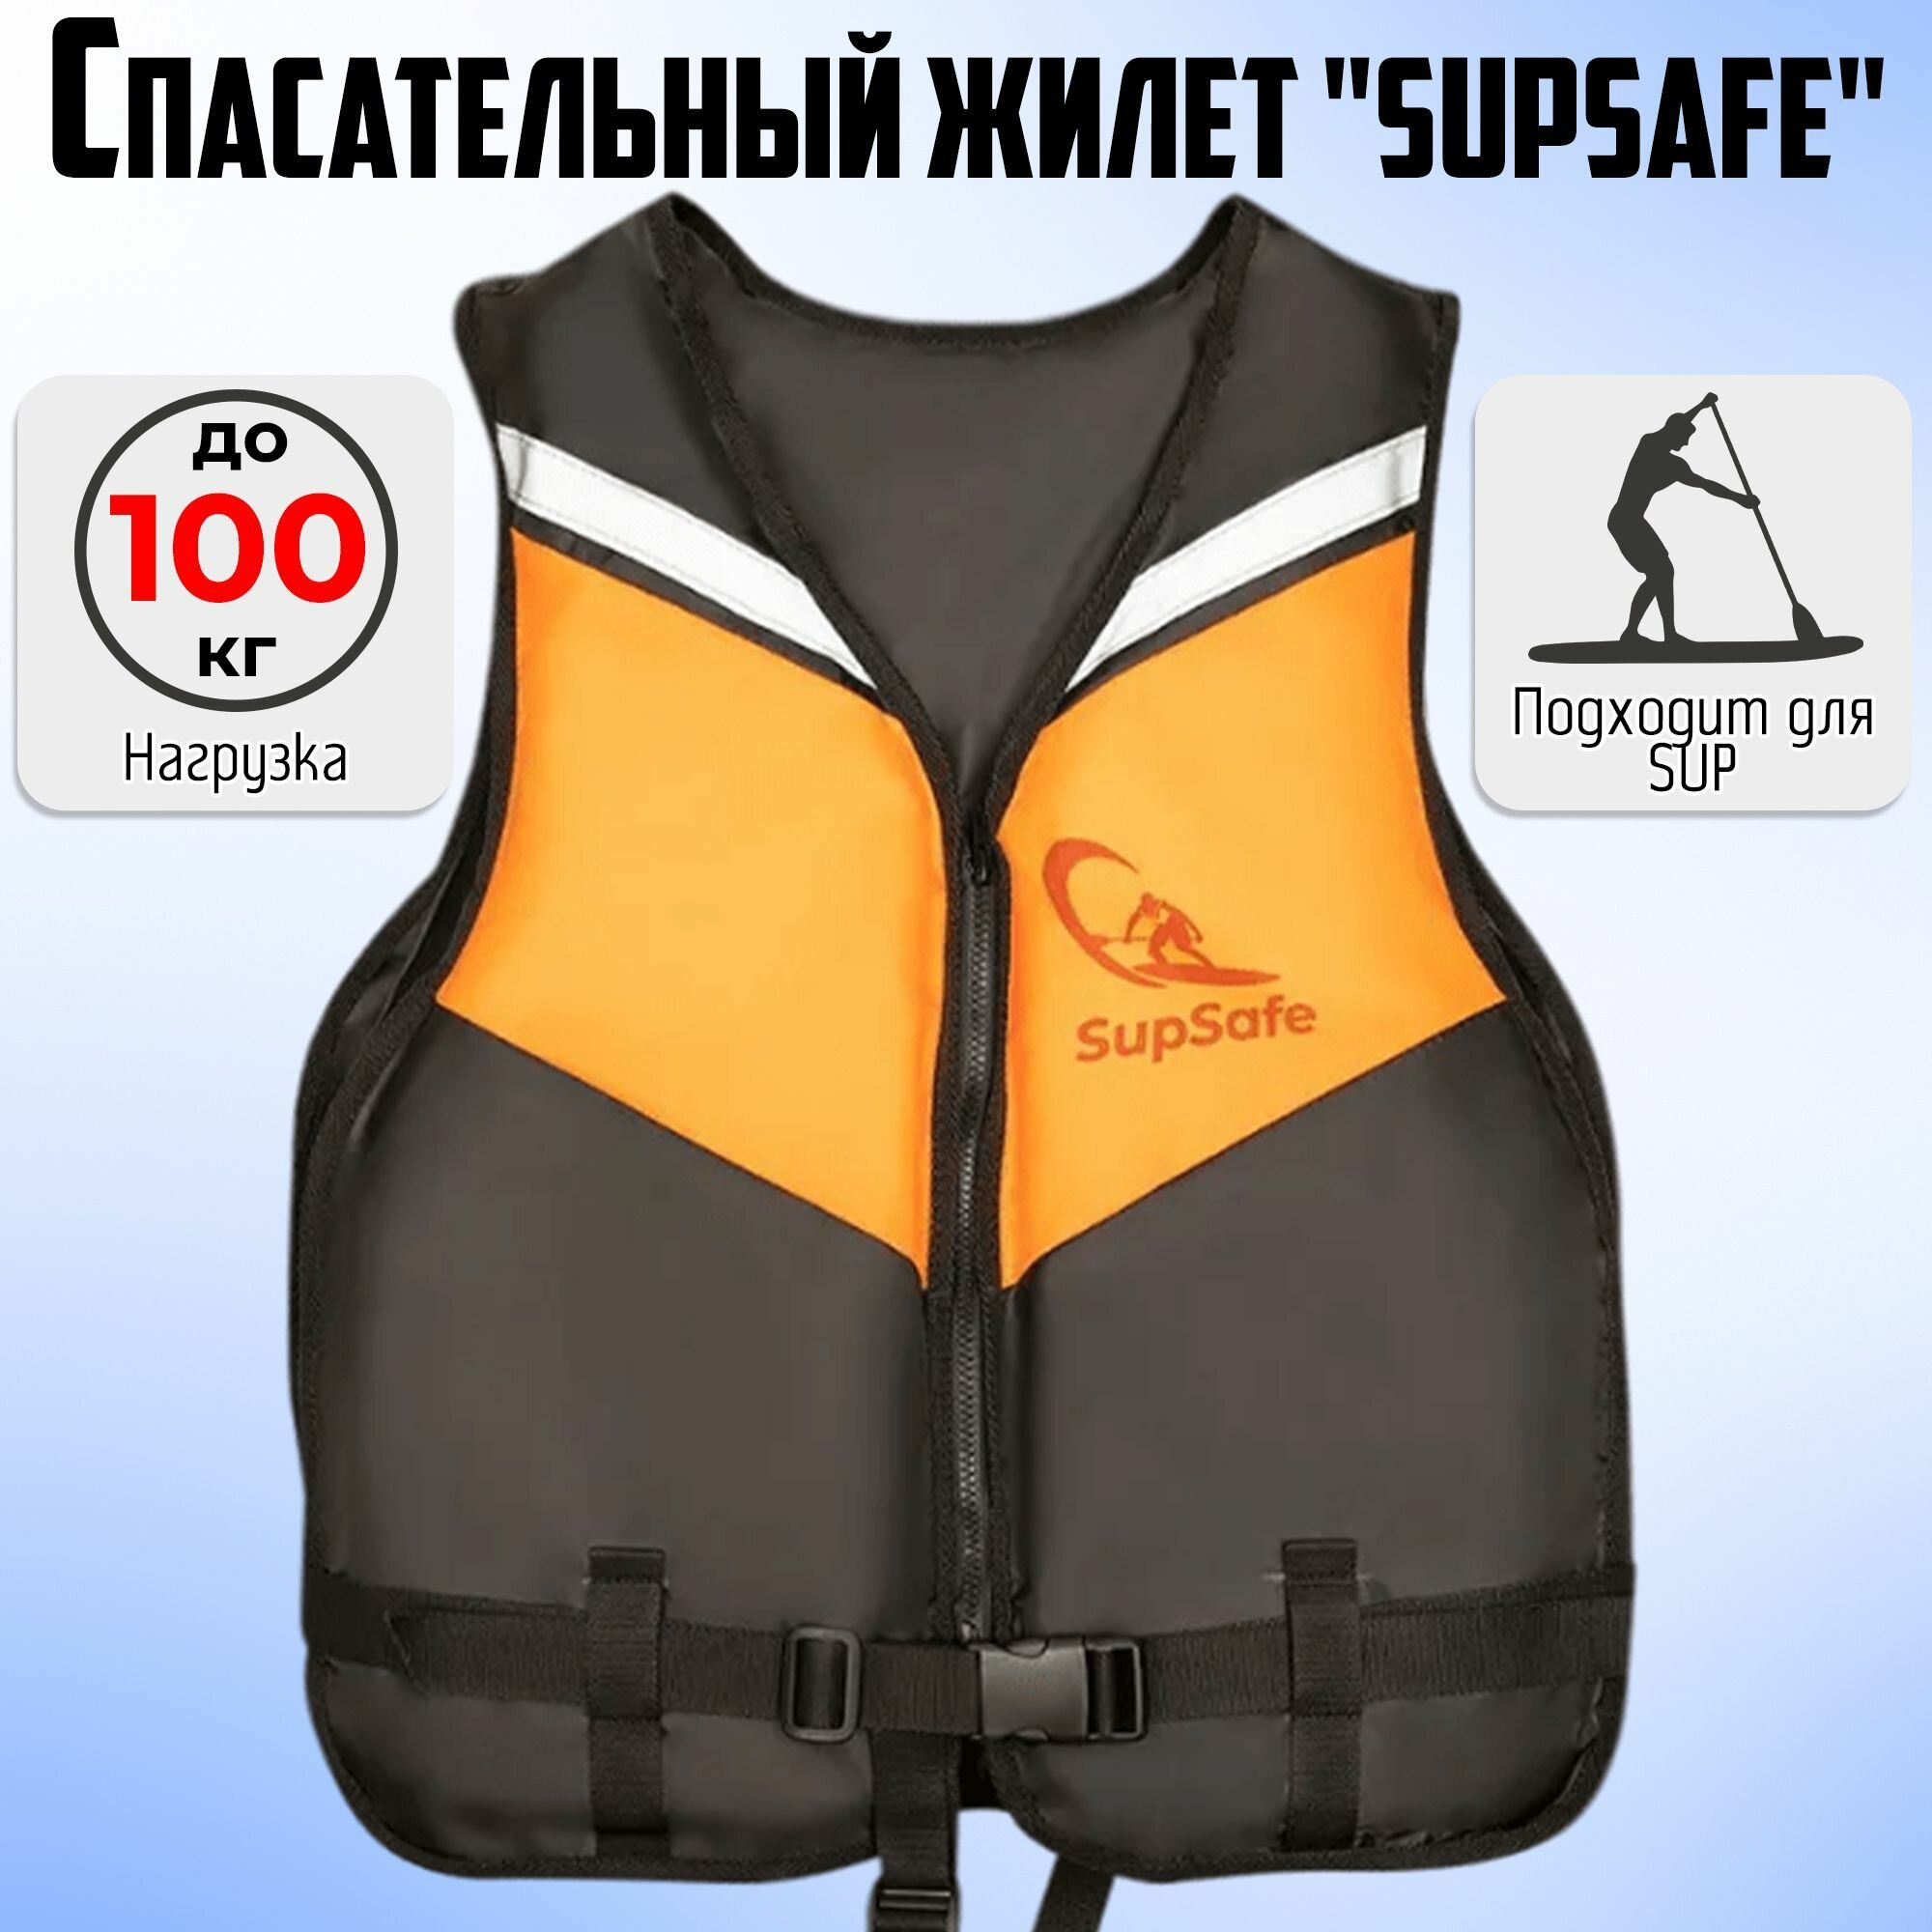 Спасательный жилет SupSafe до 100 кг, 50-52 черный; оранжевый